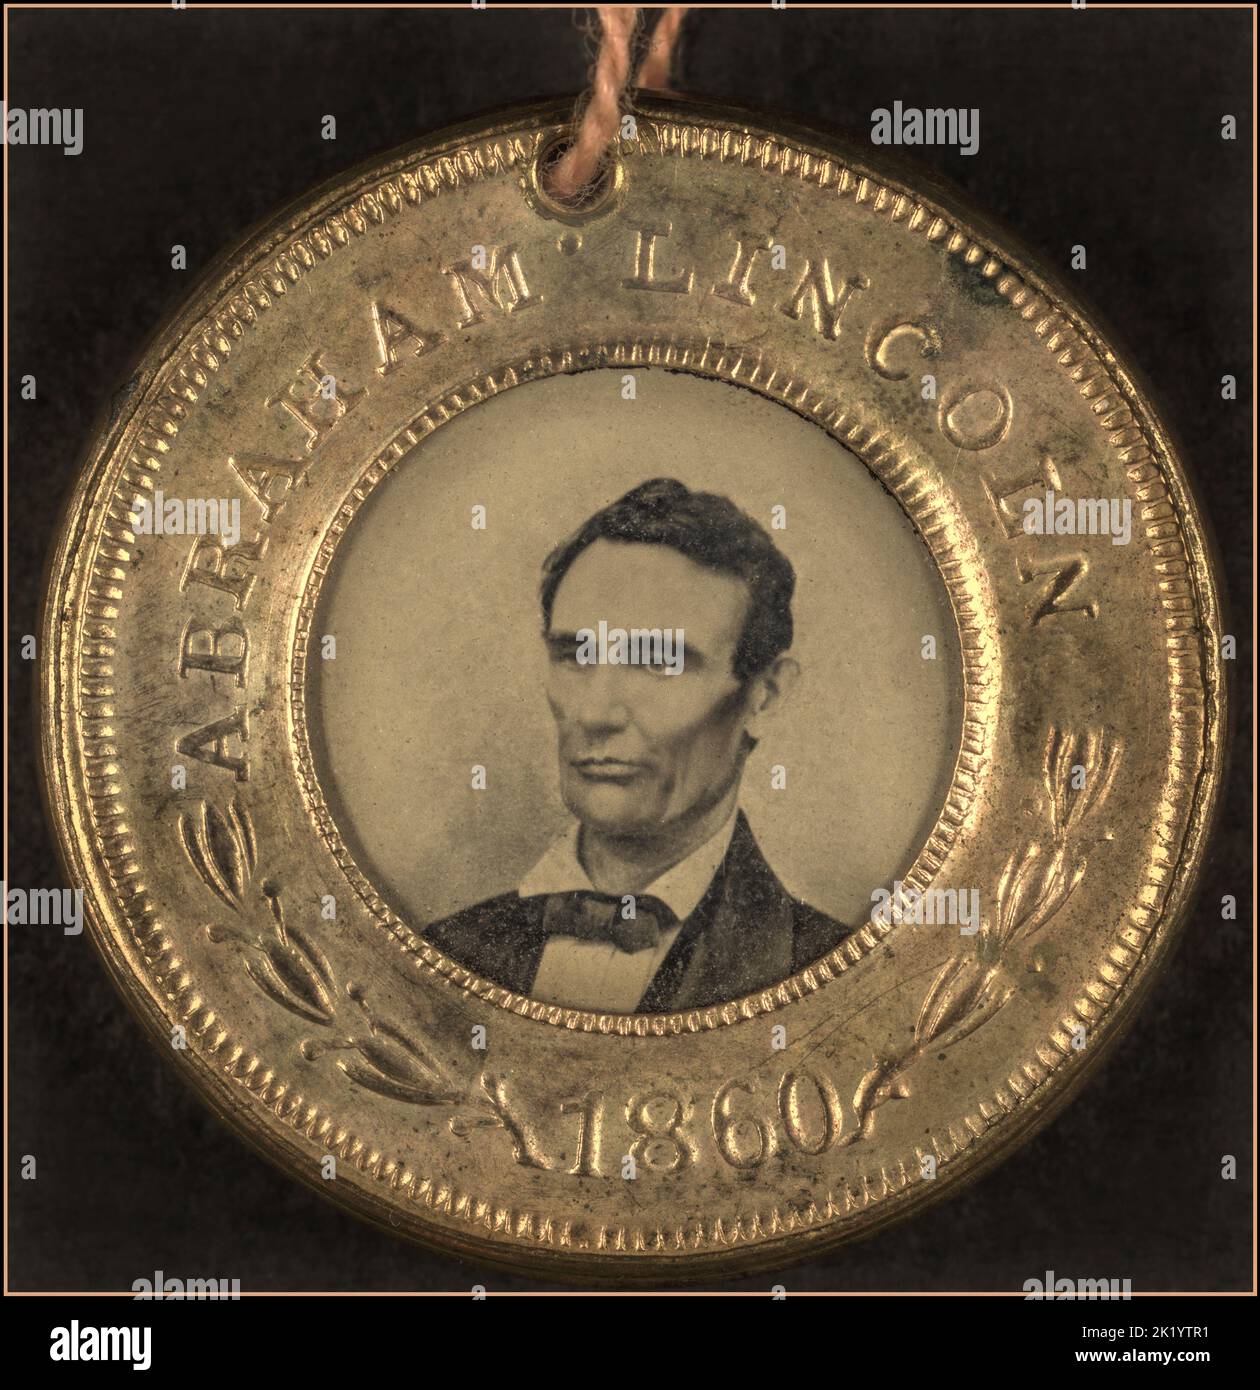 LINCOLN Presidential Campaign Button für Abraham Lincoln, 1860. Hochformat wird in Weißform angezeigt. Die Rückseite des Knopfes ist ein Tintype des Laufgefährten Hannibal Hamlin. Eines der frühesten Beispiele von fotografischen Bildern auf politischen Knöpfen. Datum 1860 Stockfoto